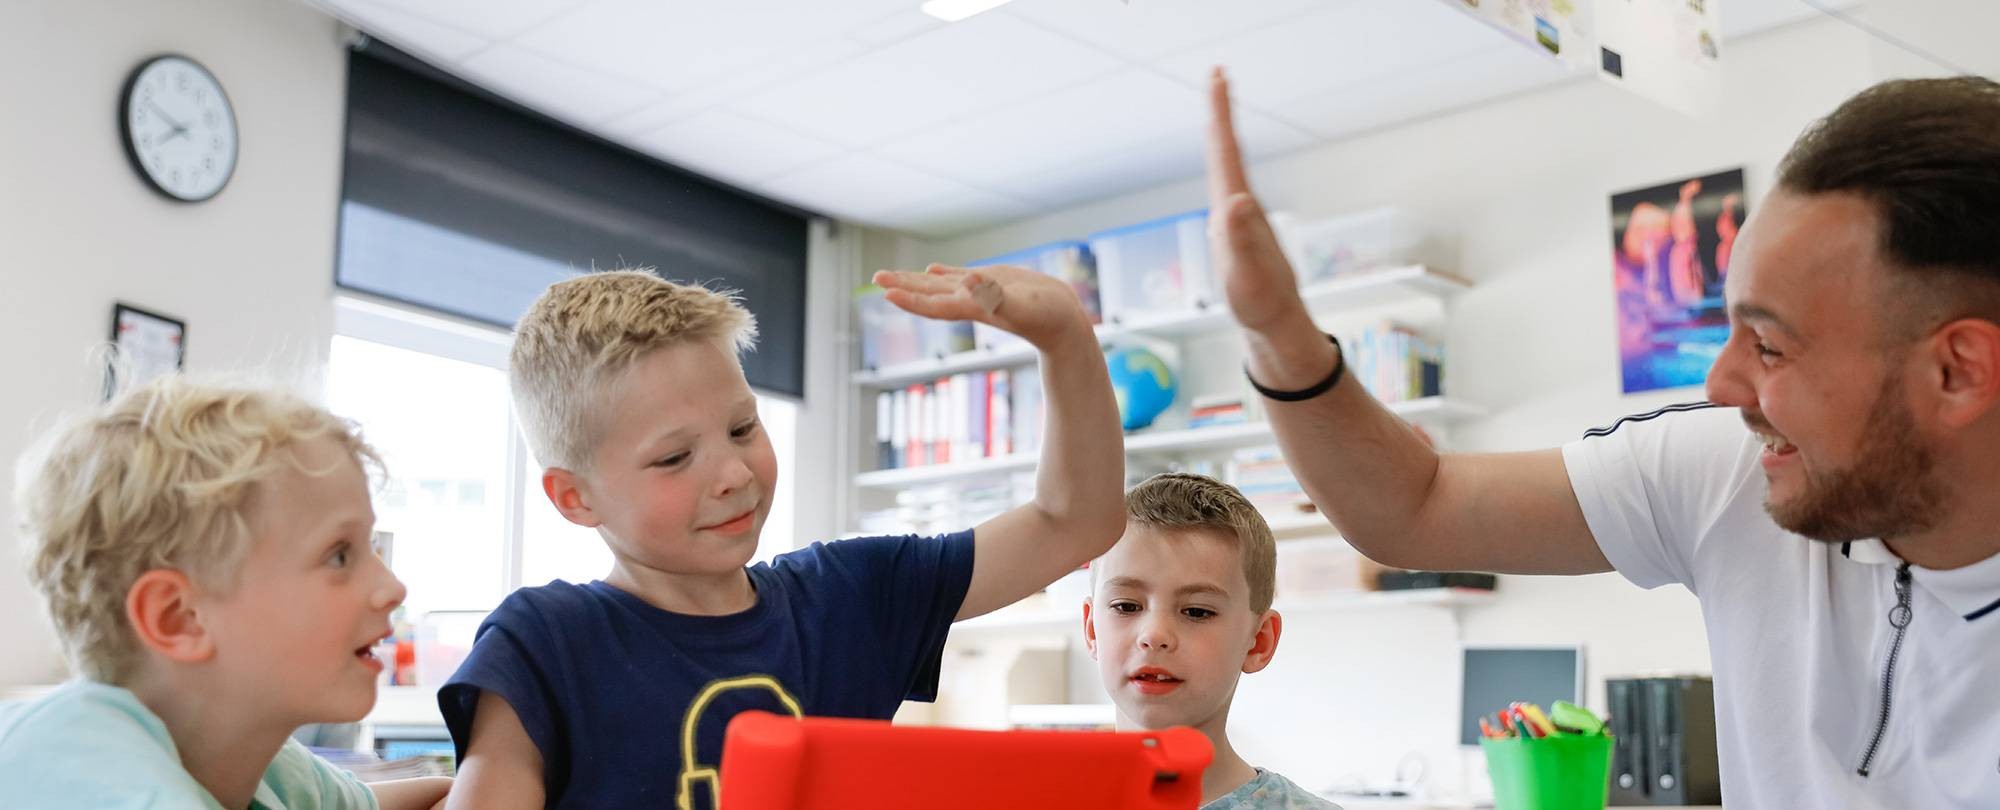 Leraar zit met drie kinderen achter de iPad en geeft één van die leerlingen een high-five.